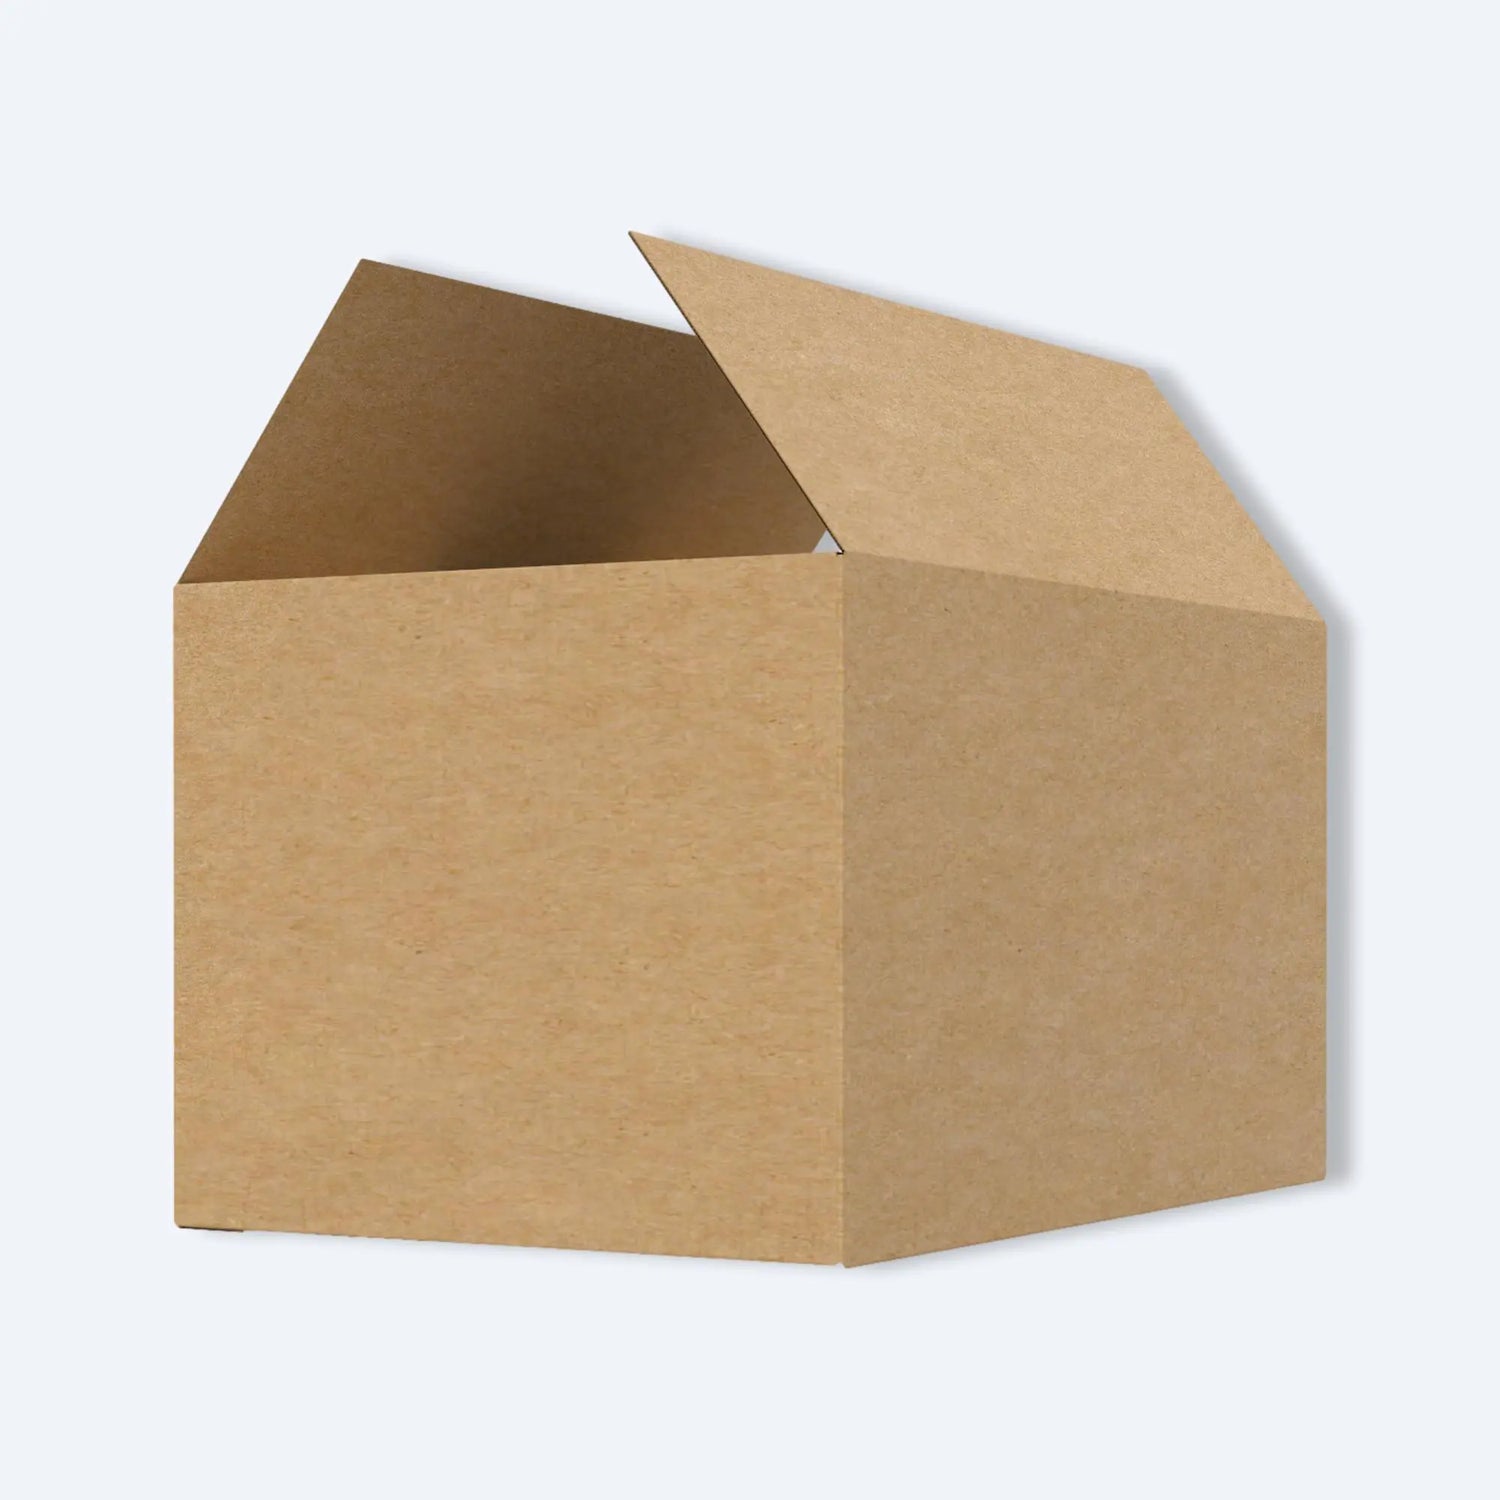 一個用於郵寄的香港郵政專用紙箱，紙箱為棕色，打開頂蓋，展示了紙箱的內部空間。